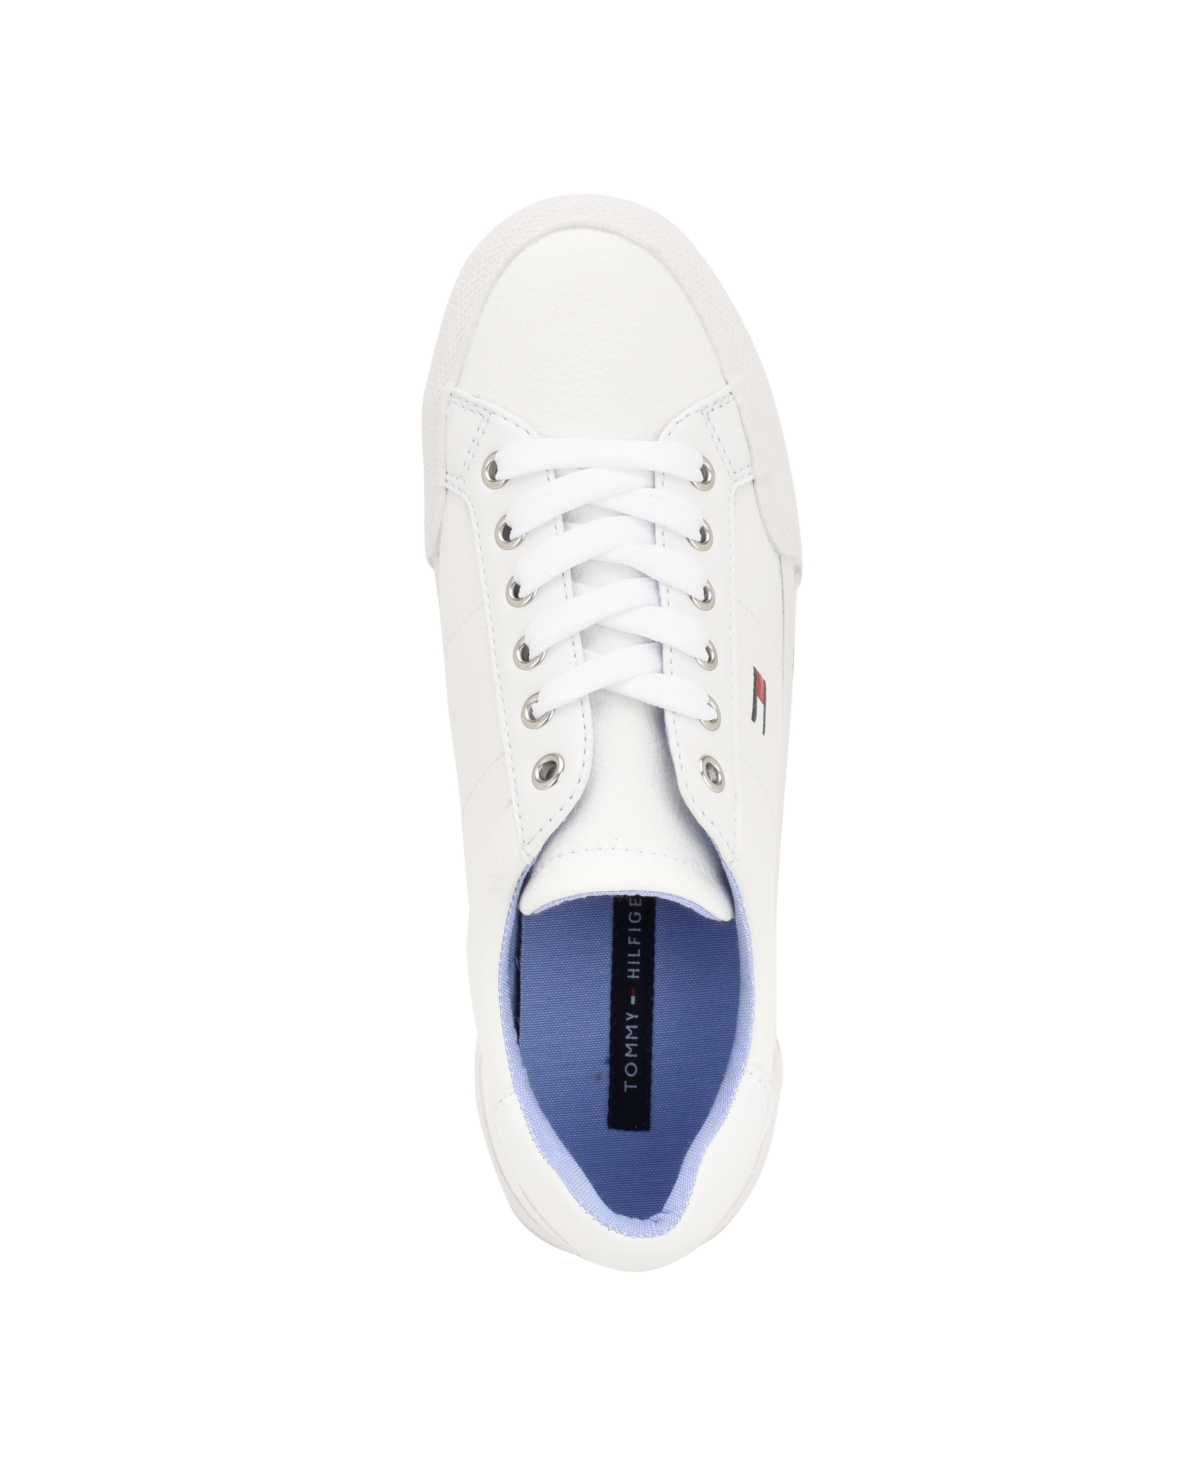 Tommy Hilfiger Women's Lestiel Casual Slip-on Sneakers - White